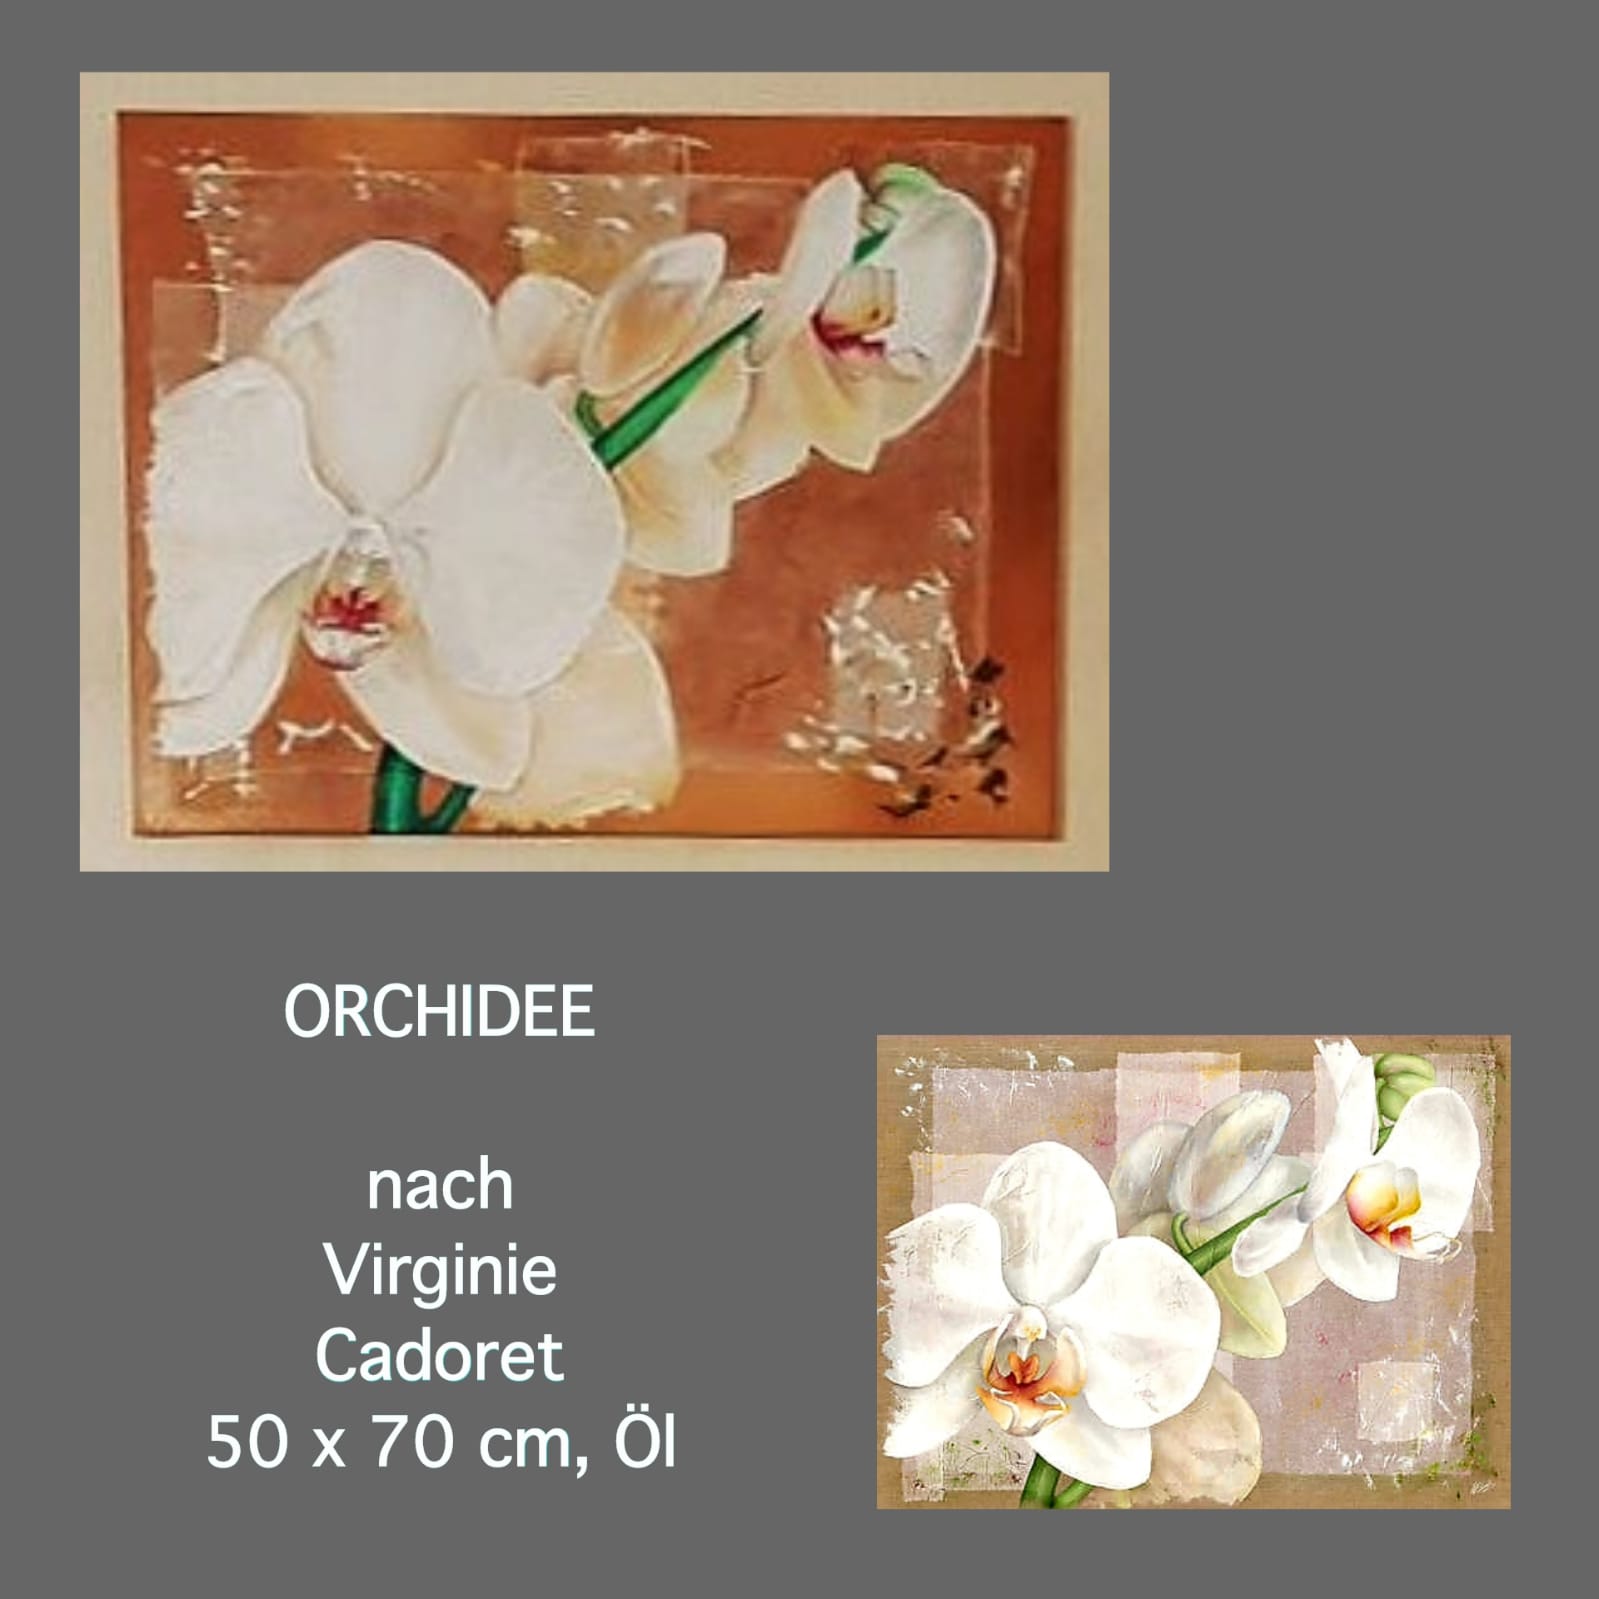 ORCHIDEE nach Virginie Cadoret , Öl 50x70 cm